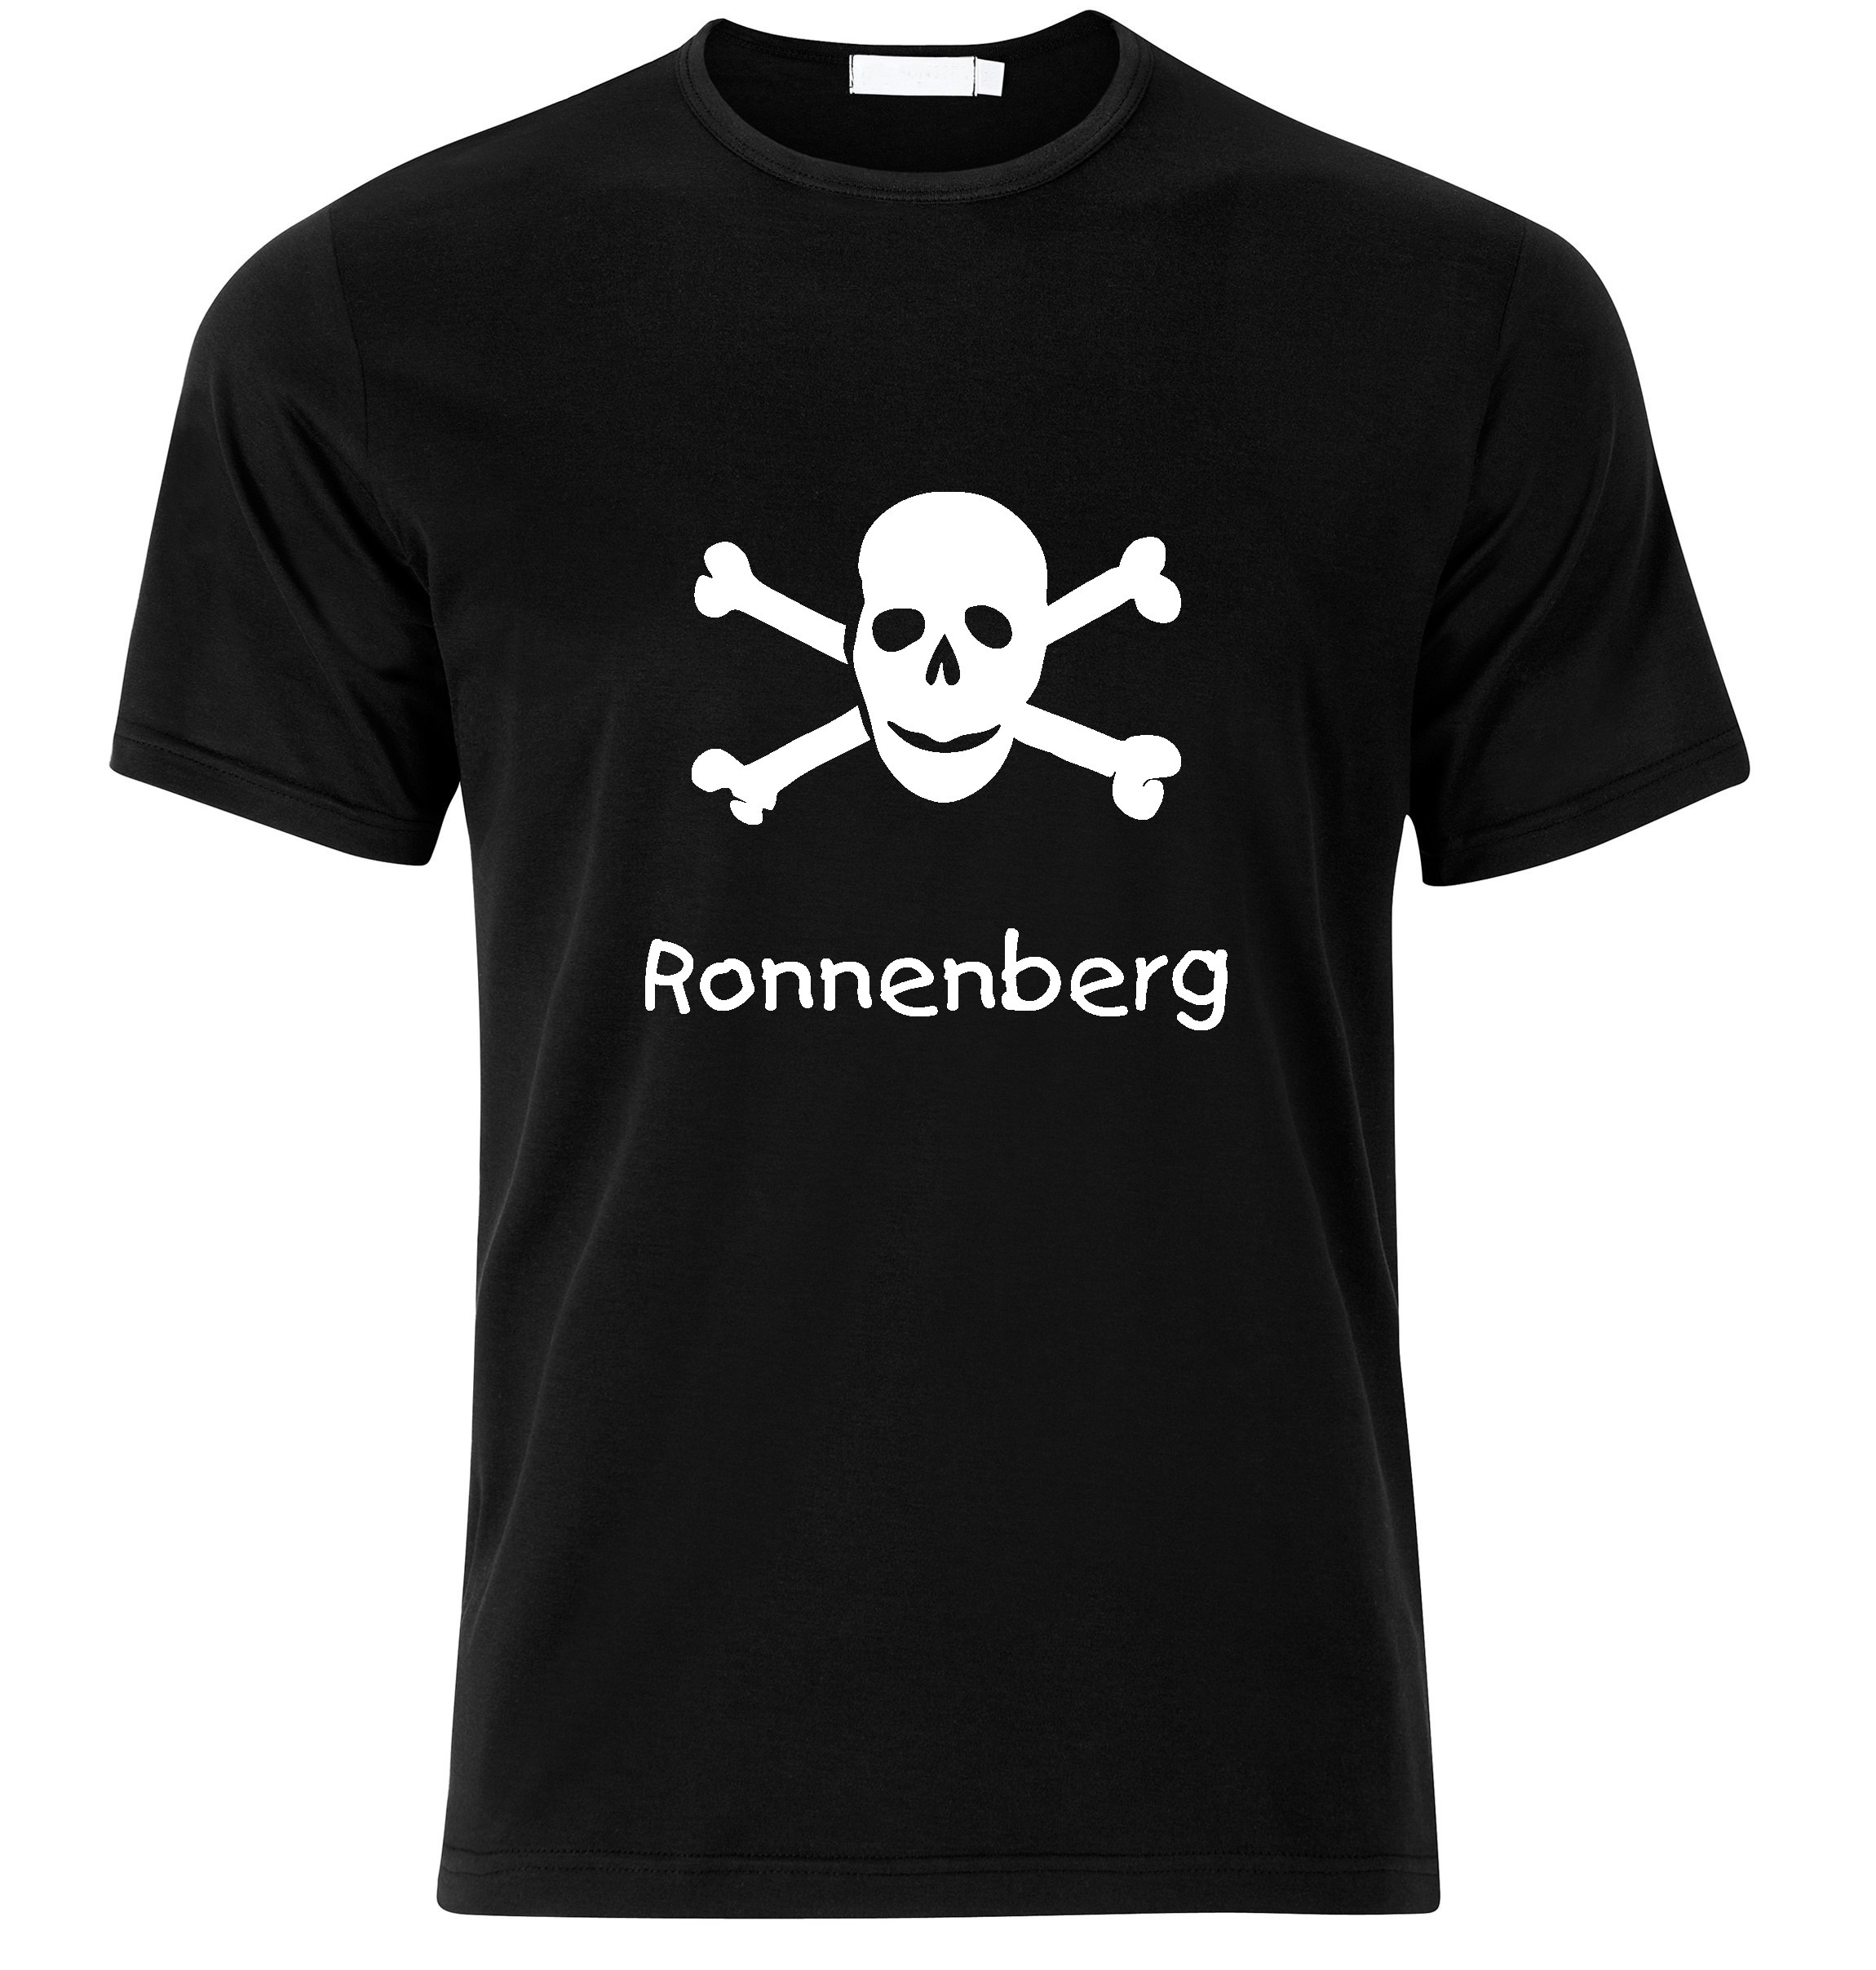 T-Shirt Ronnenberg Jolly Roger, Totenkopf